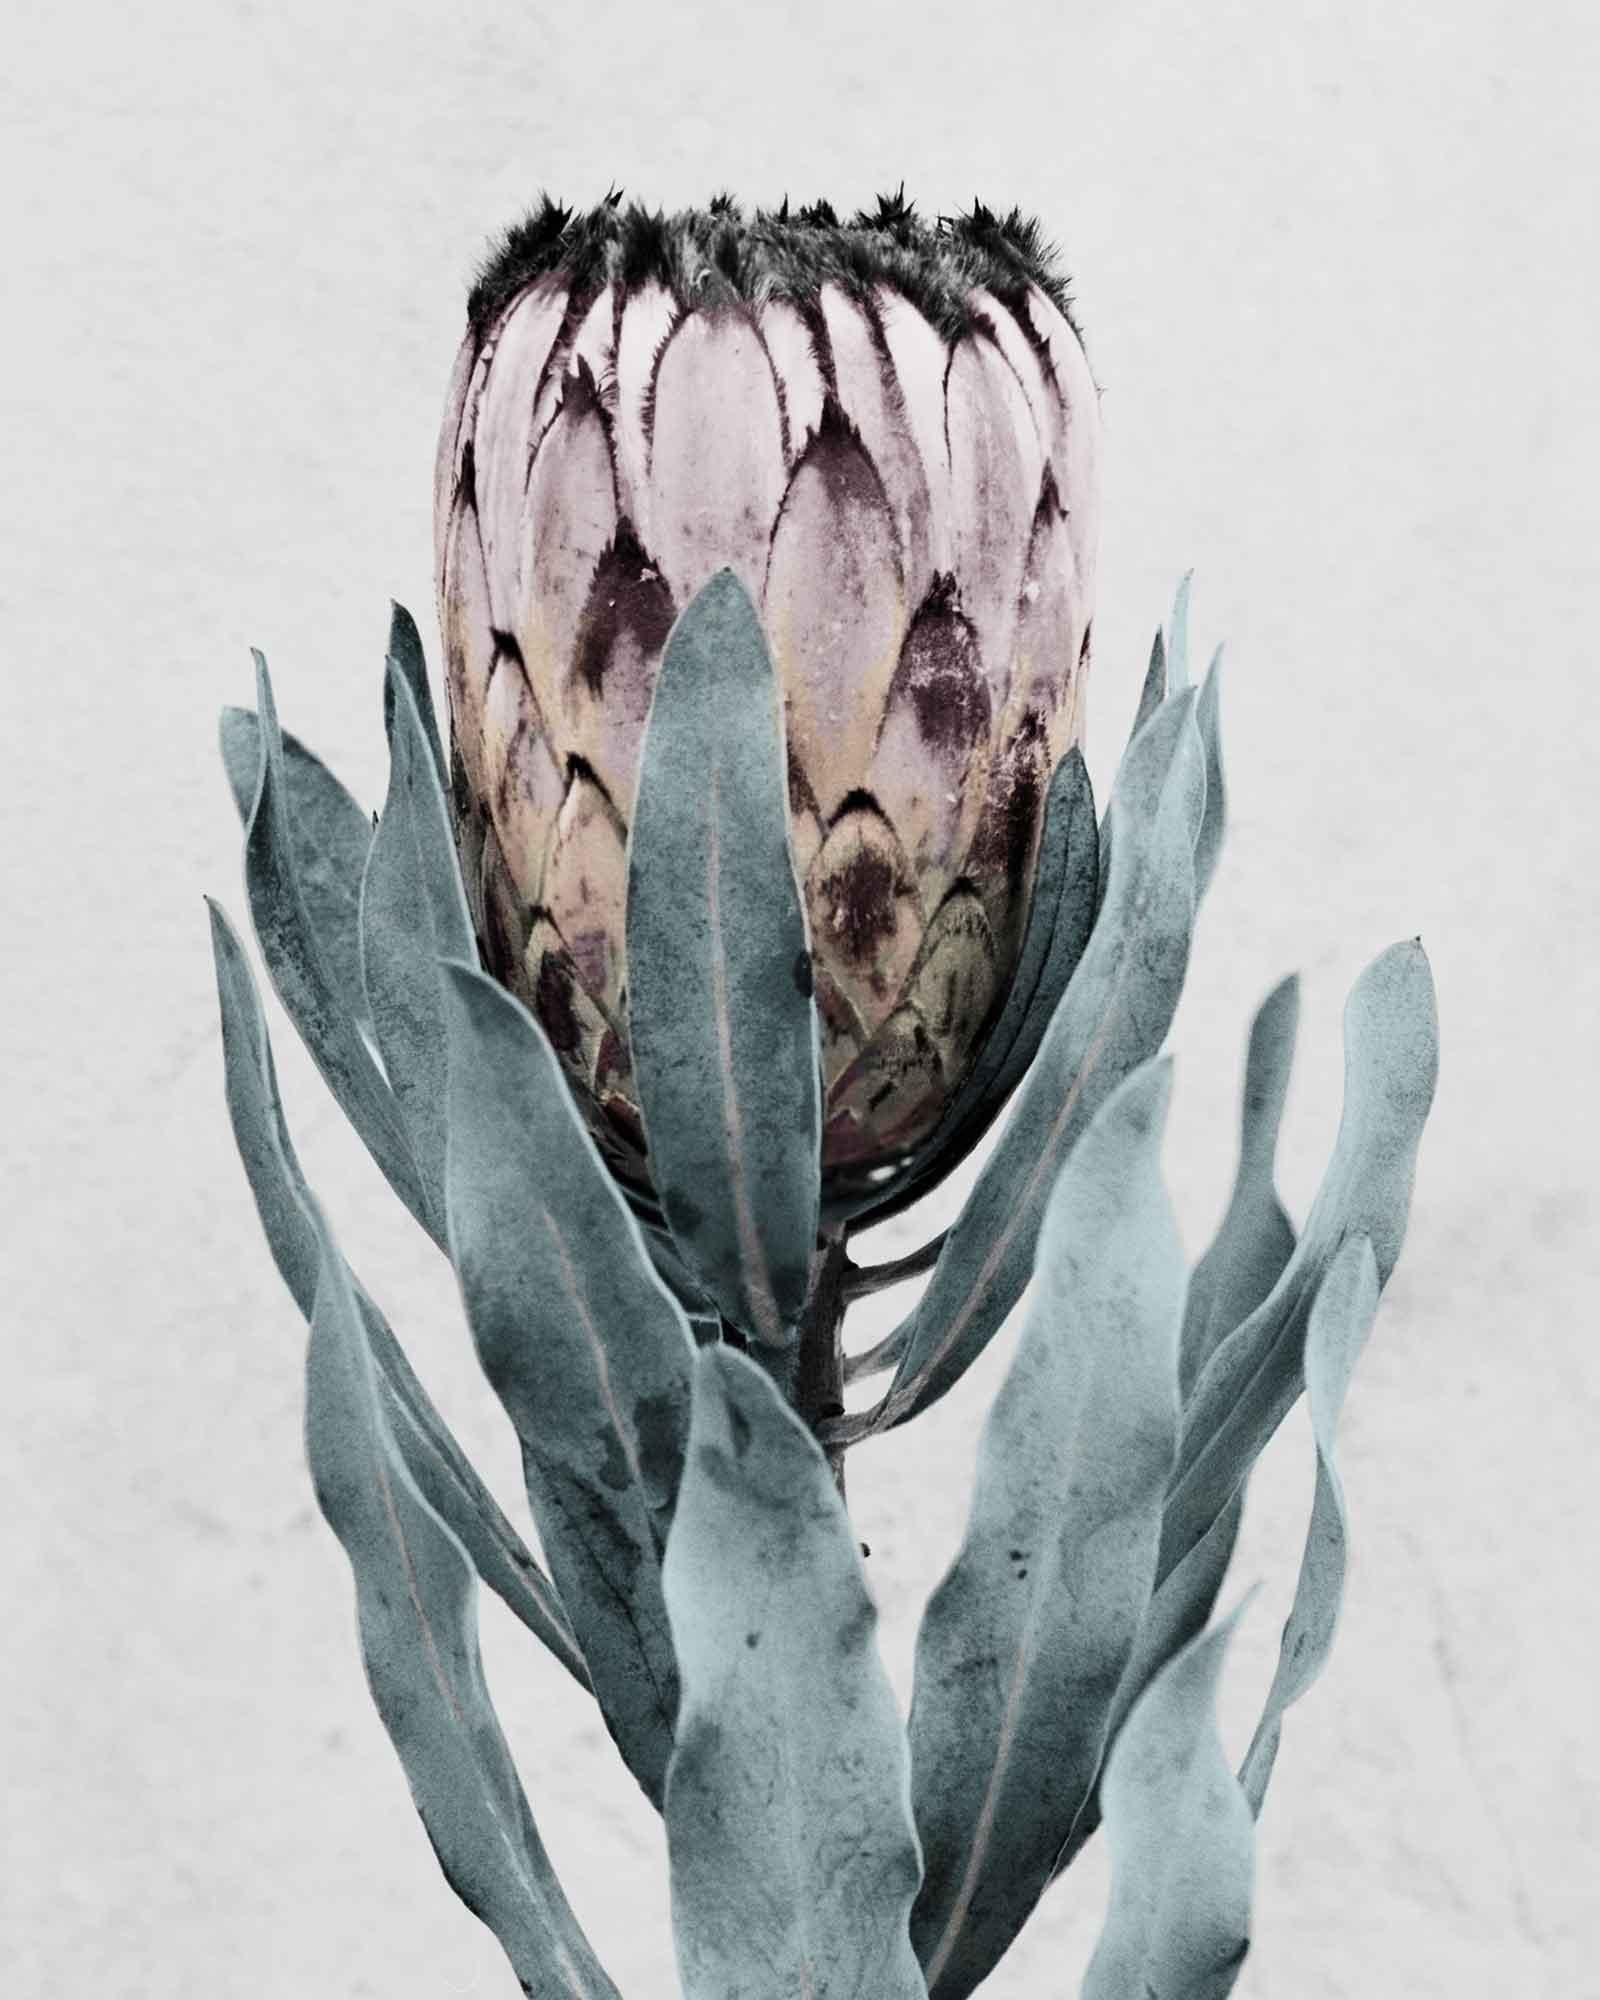 Botanica #17 (Protea Cynaroides) – Photograph von Vee Speers